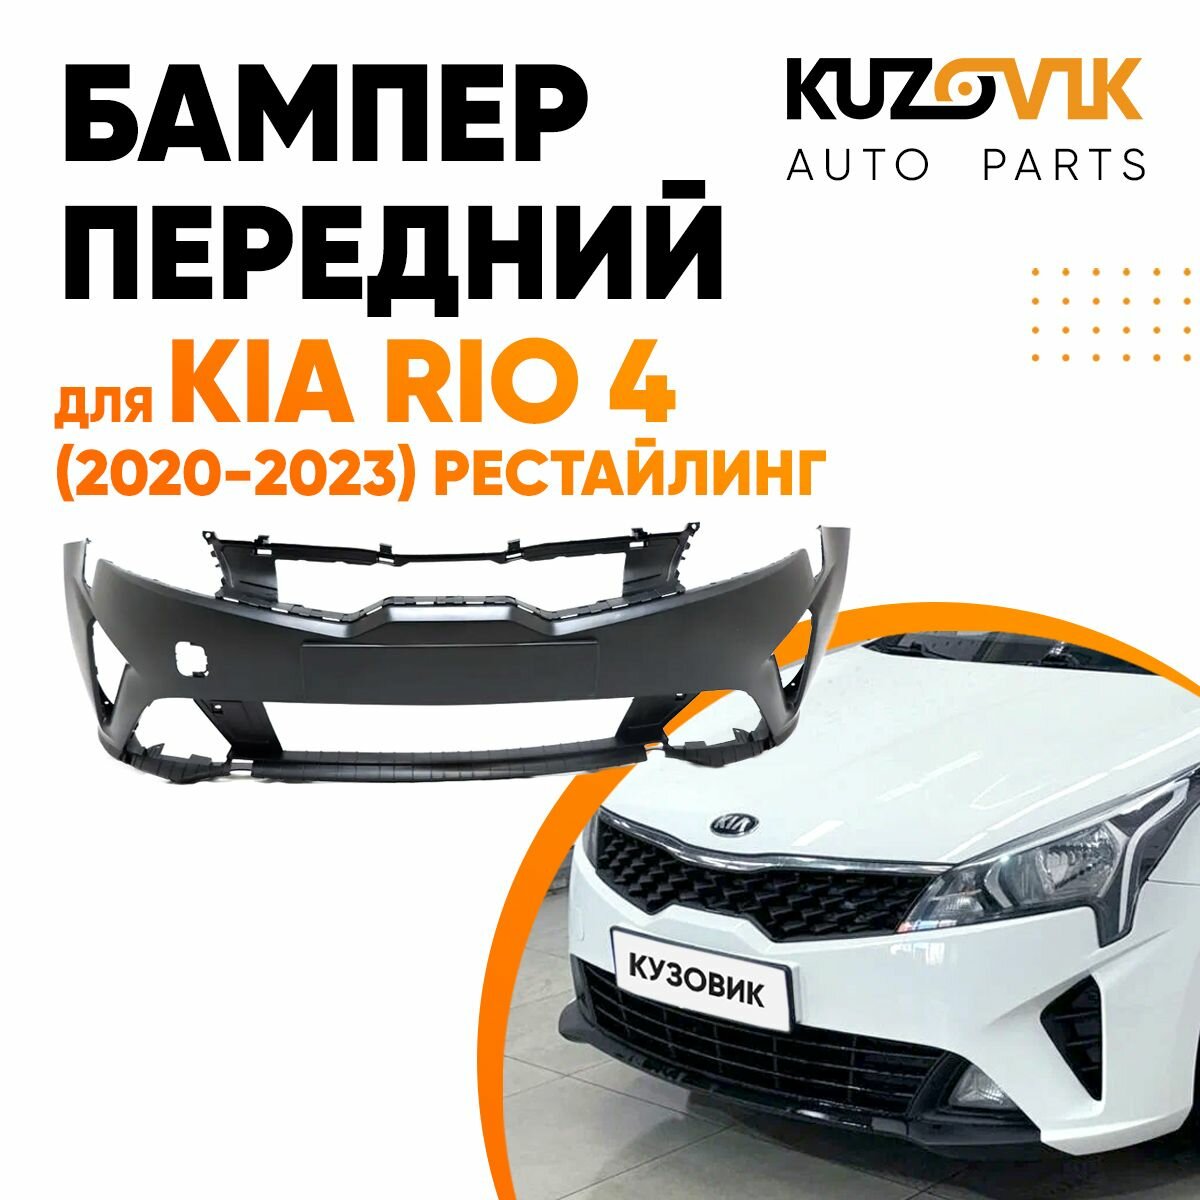 Бампер передний Kia Rio Киа Рио 4 (2020-) рестайлинг